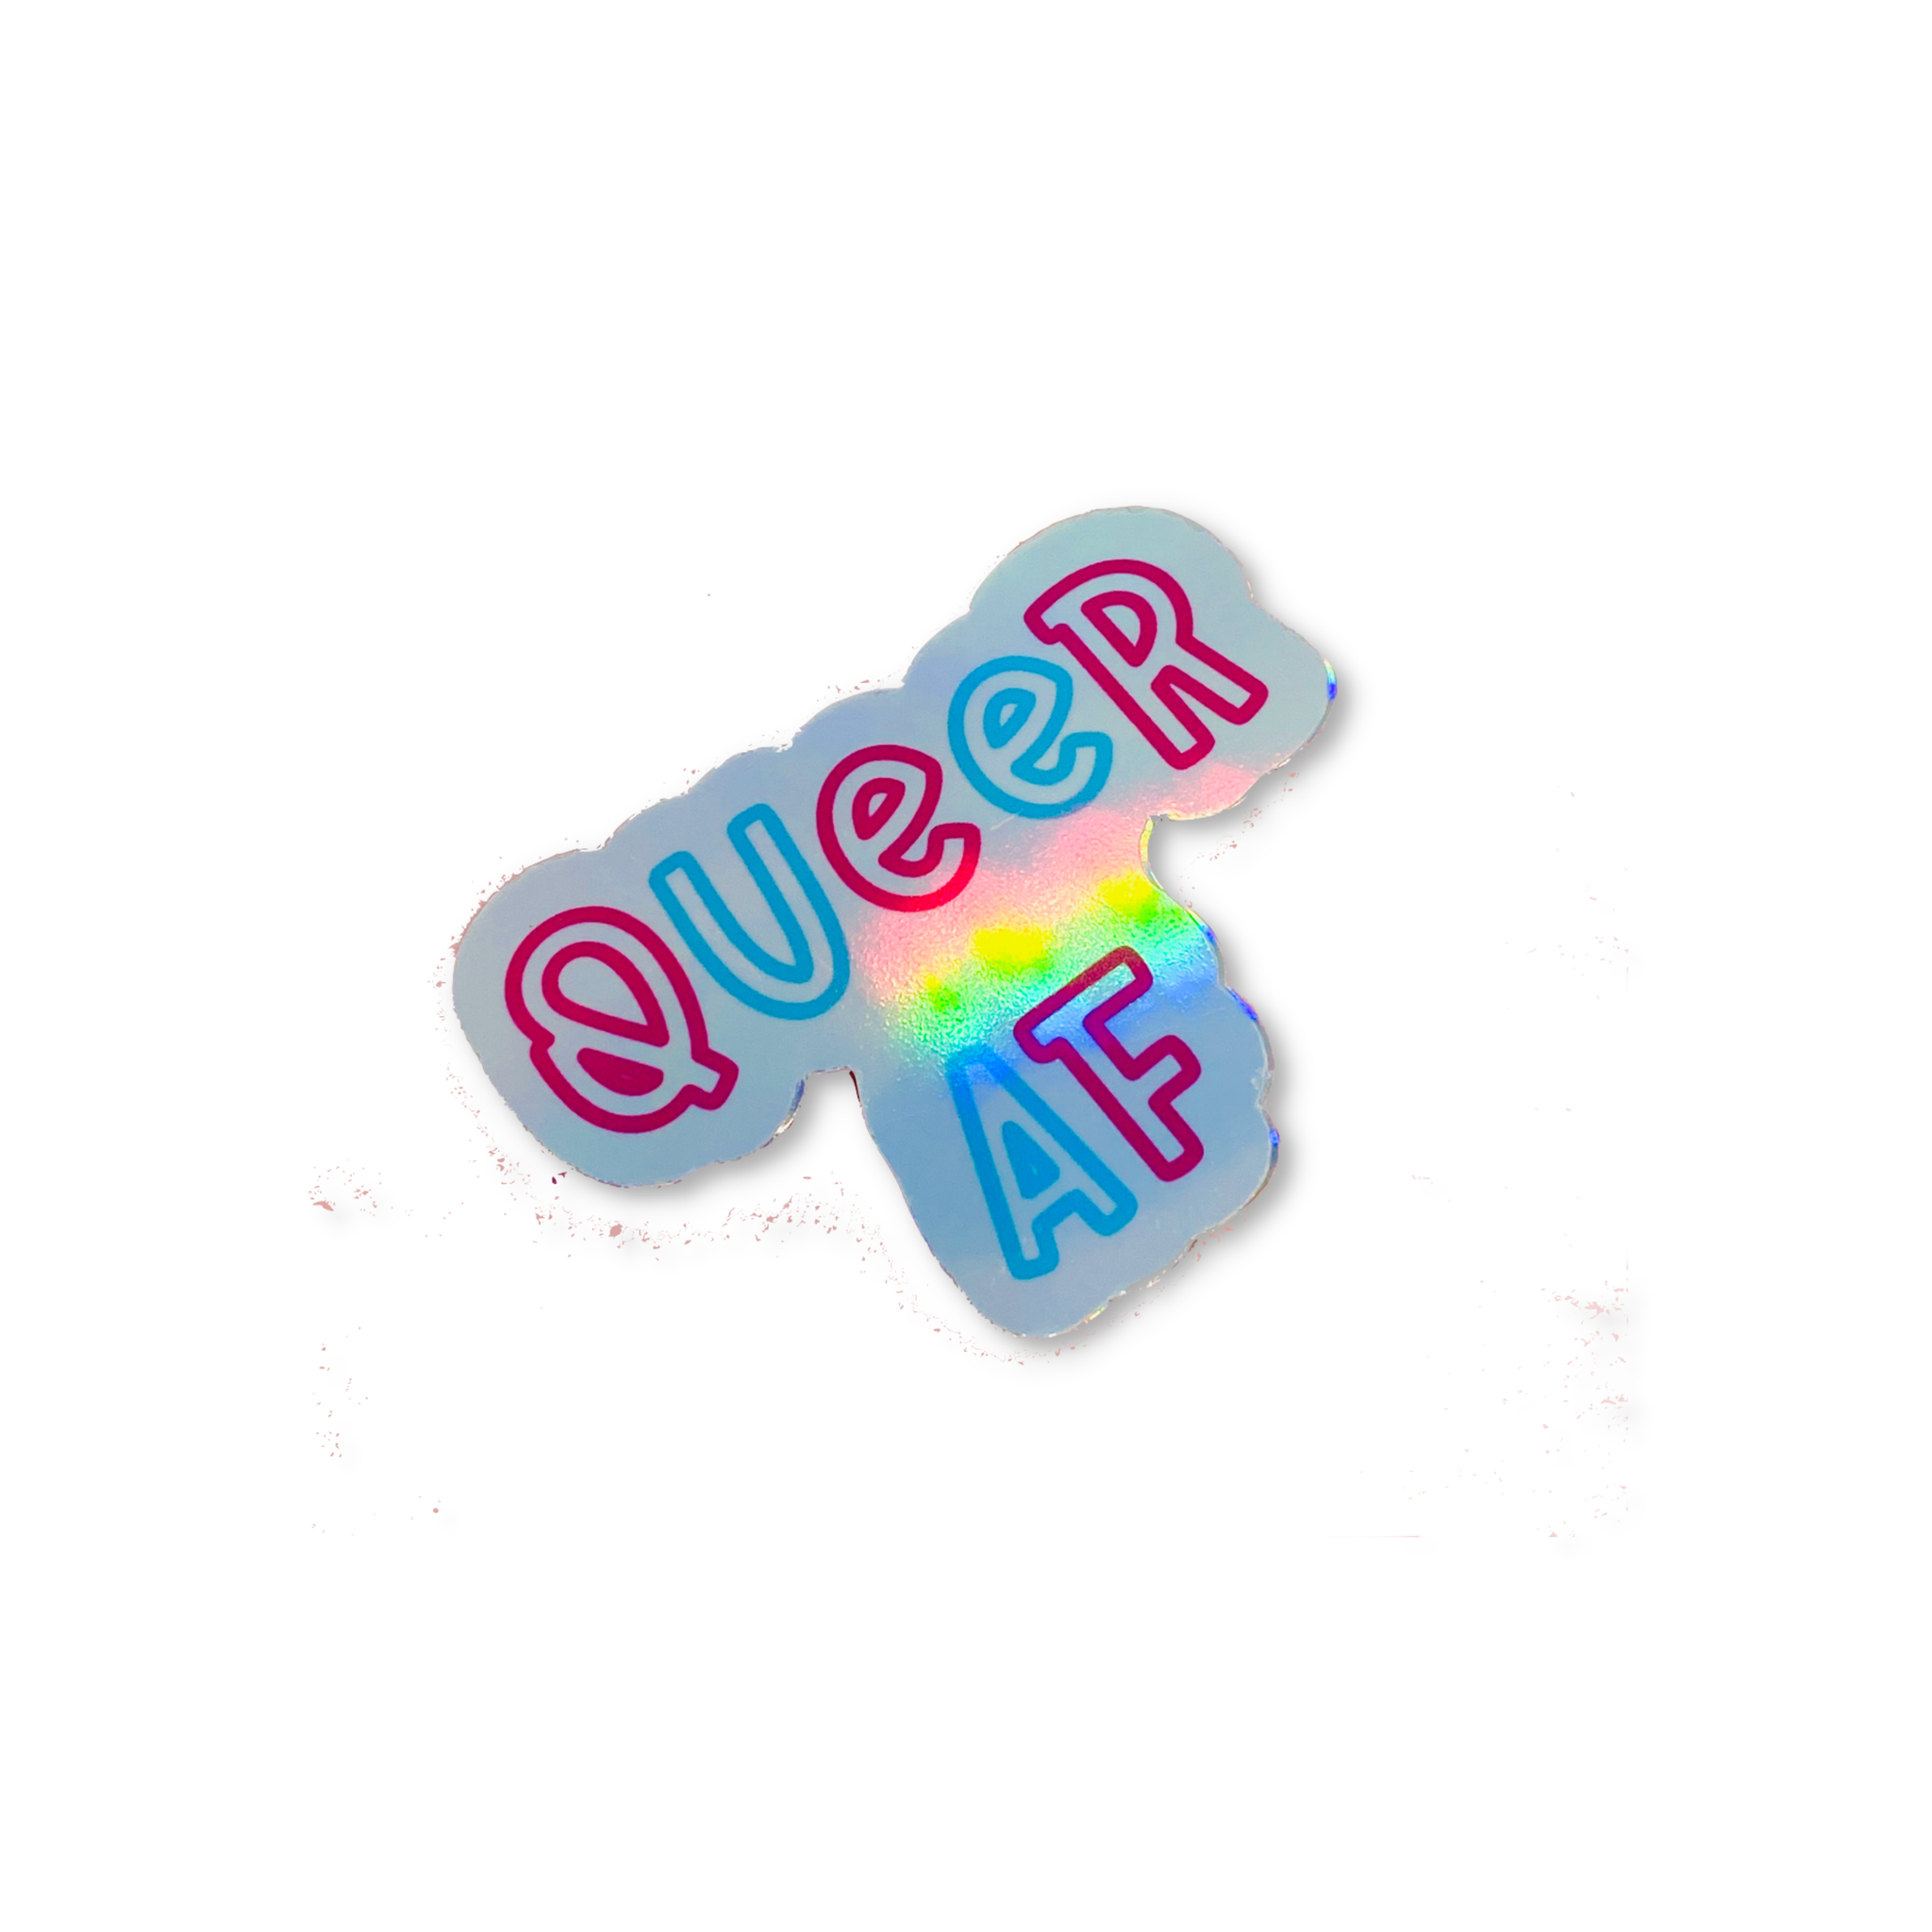 Queer AF Holographic Vinyl Sticker